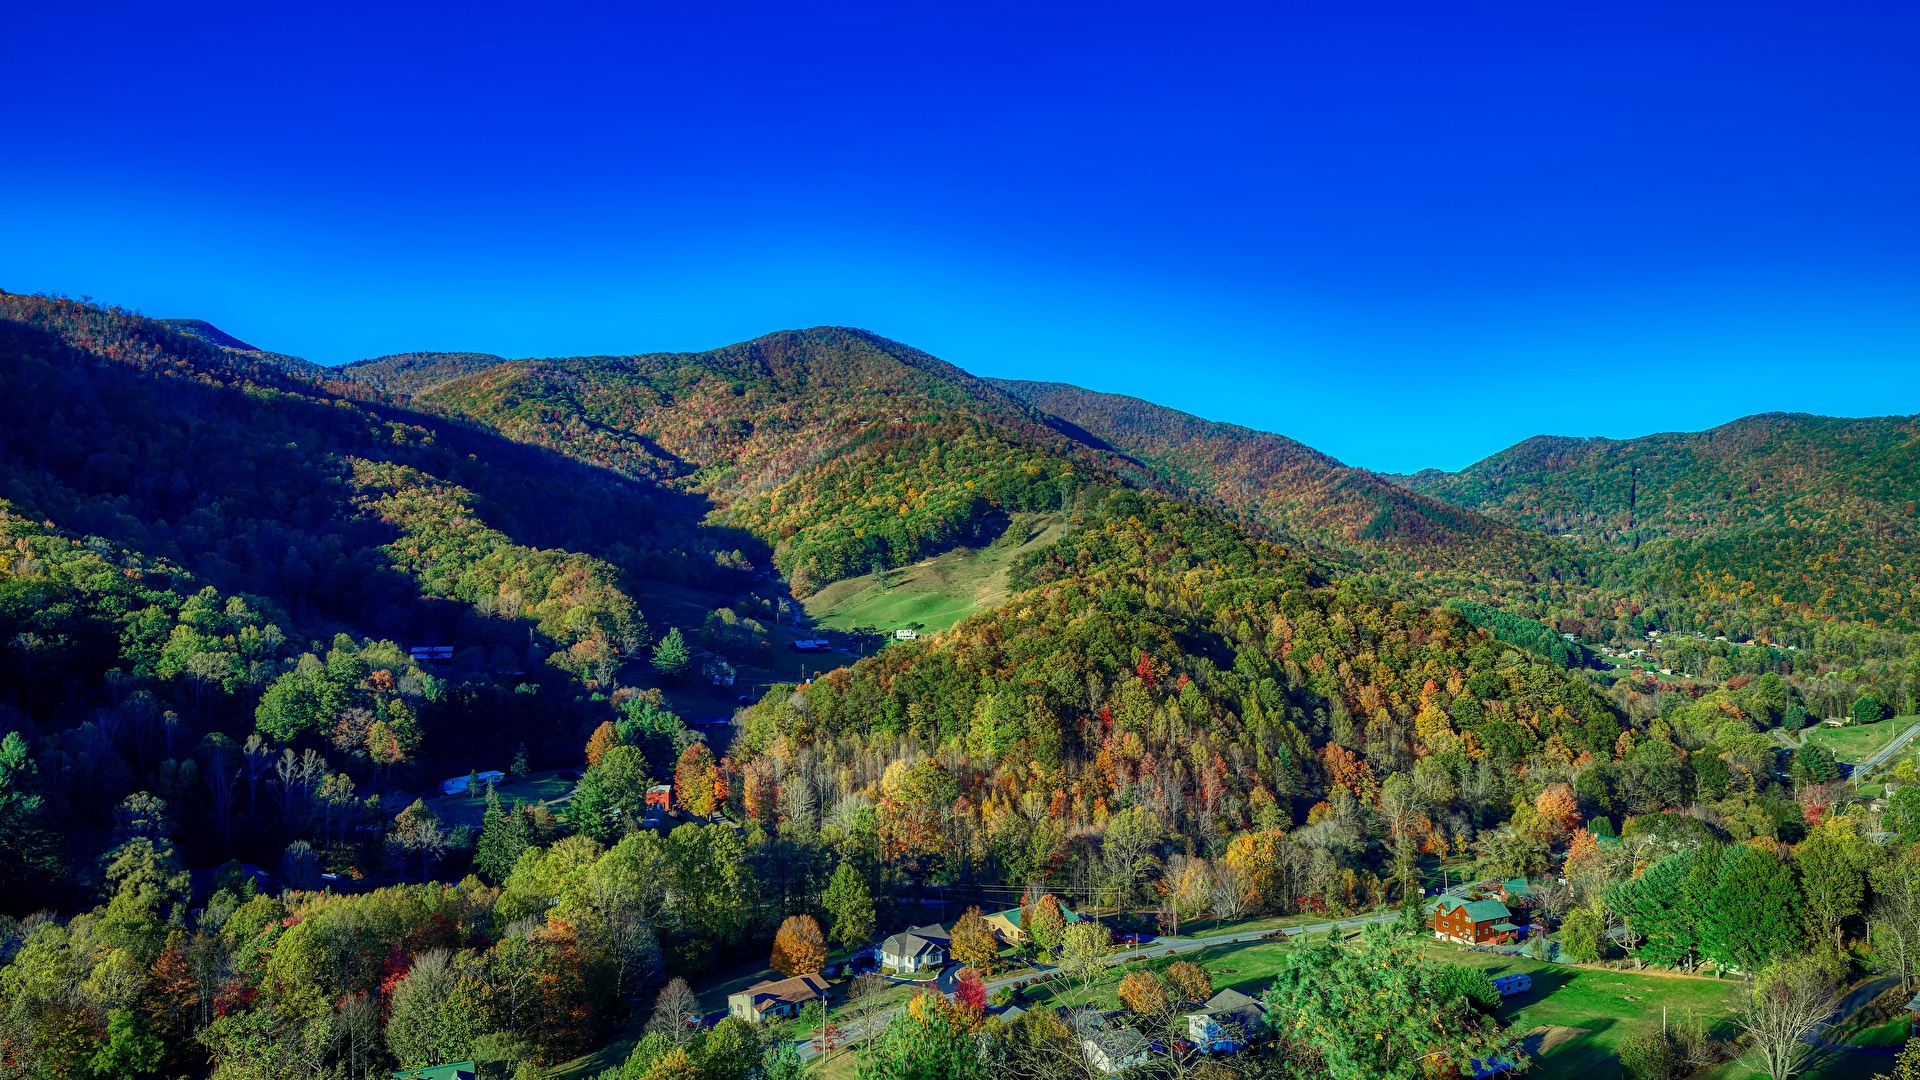 壁紙 19x1080 アメリカ合衆国 山 森林 秋 風景写真 North Carolina 村 自然 ダウンロード 写真